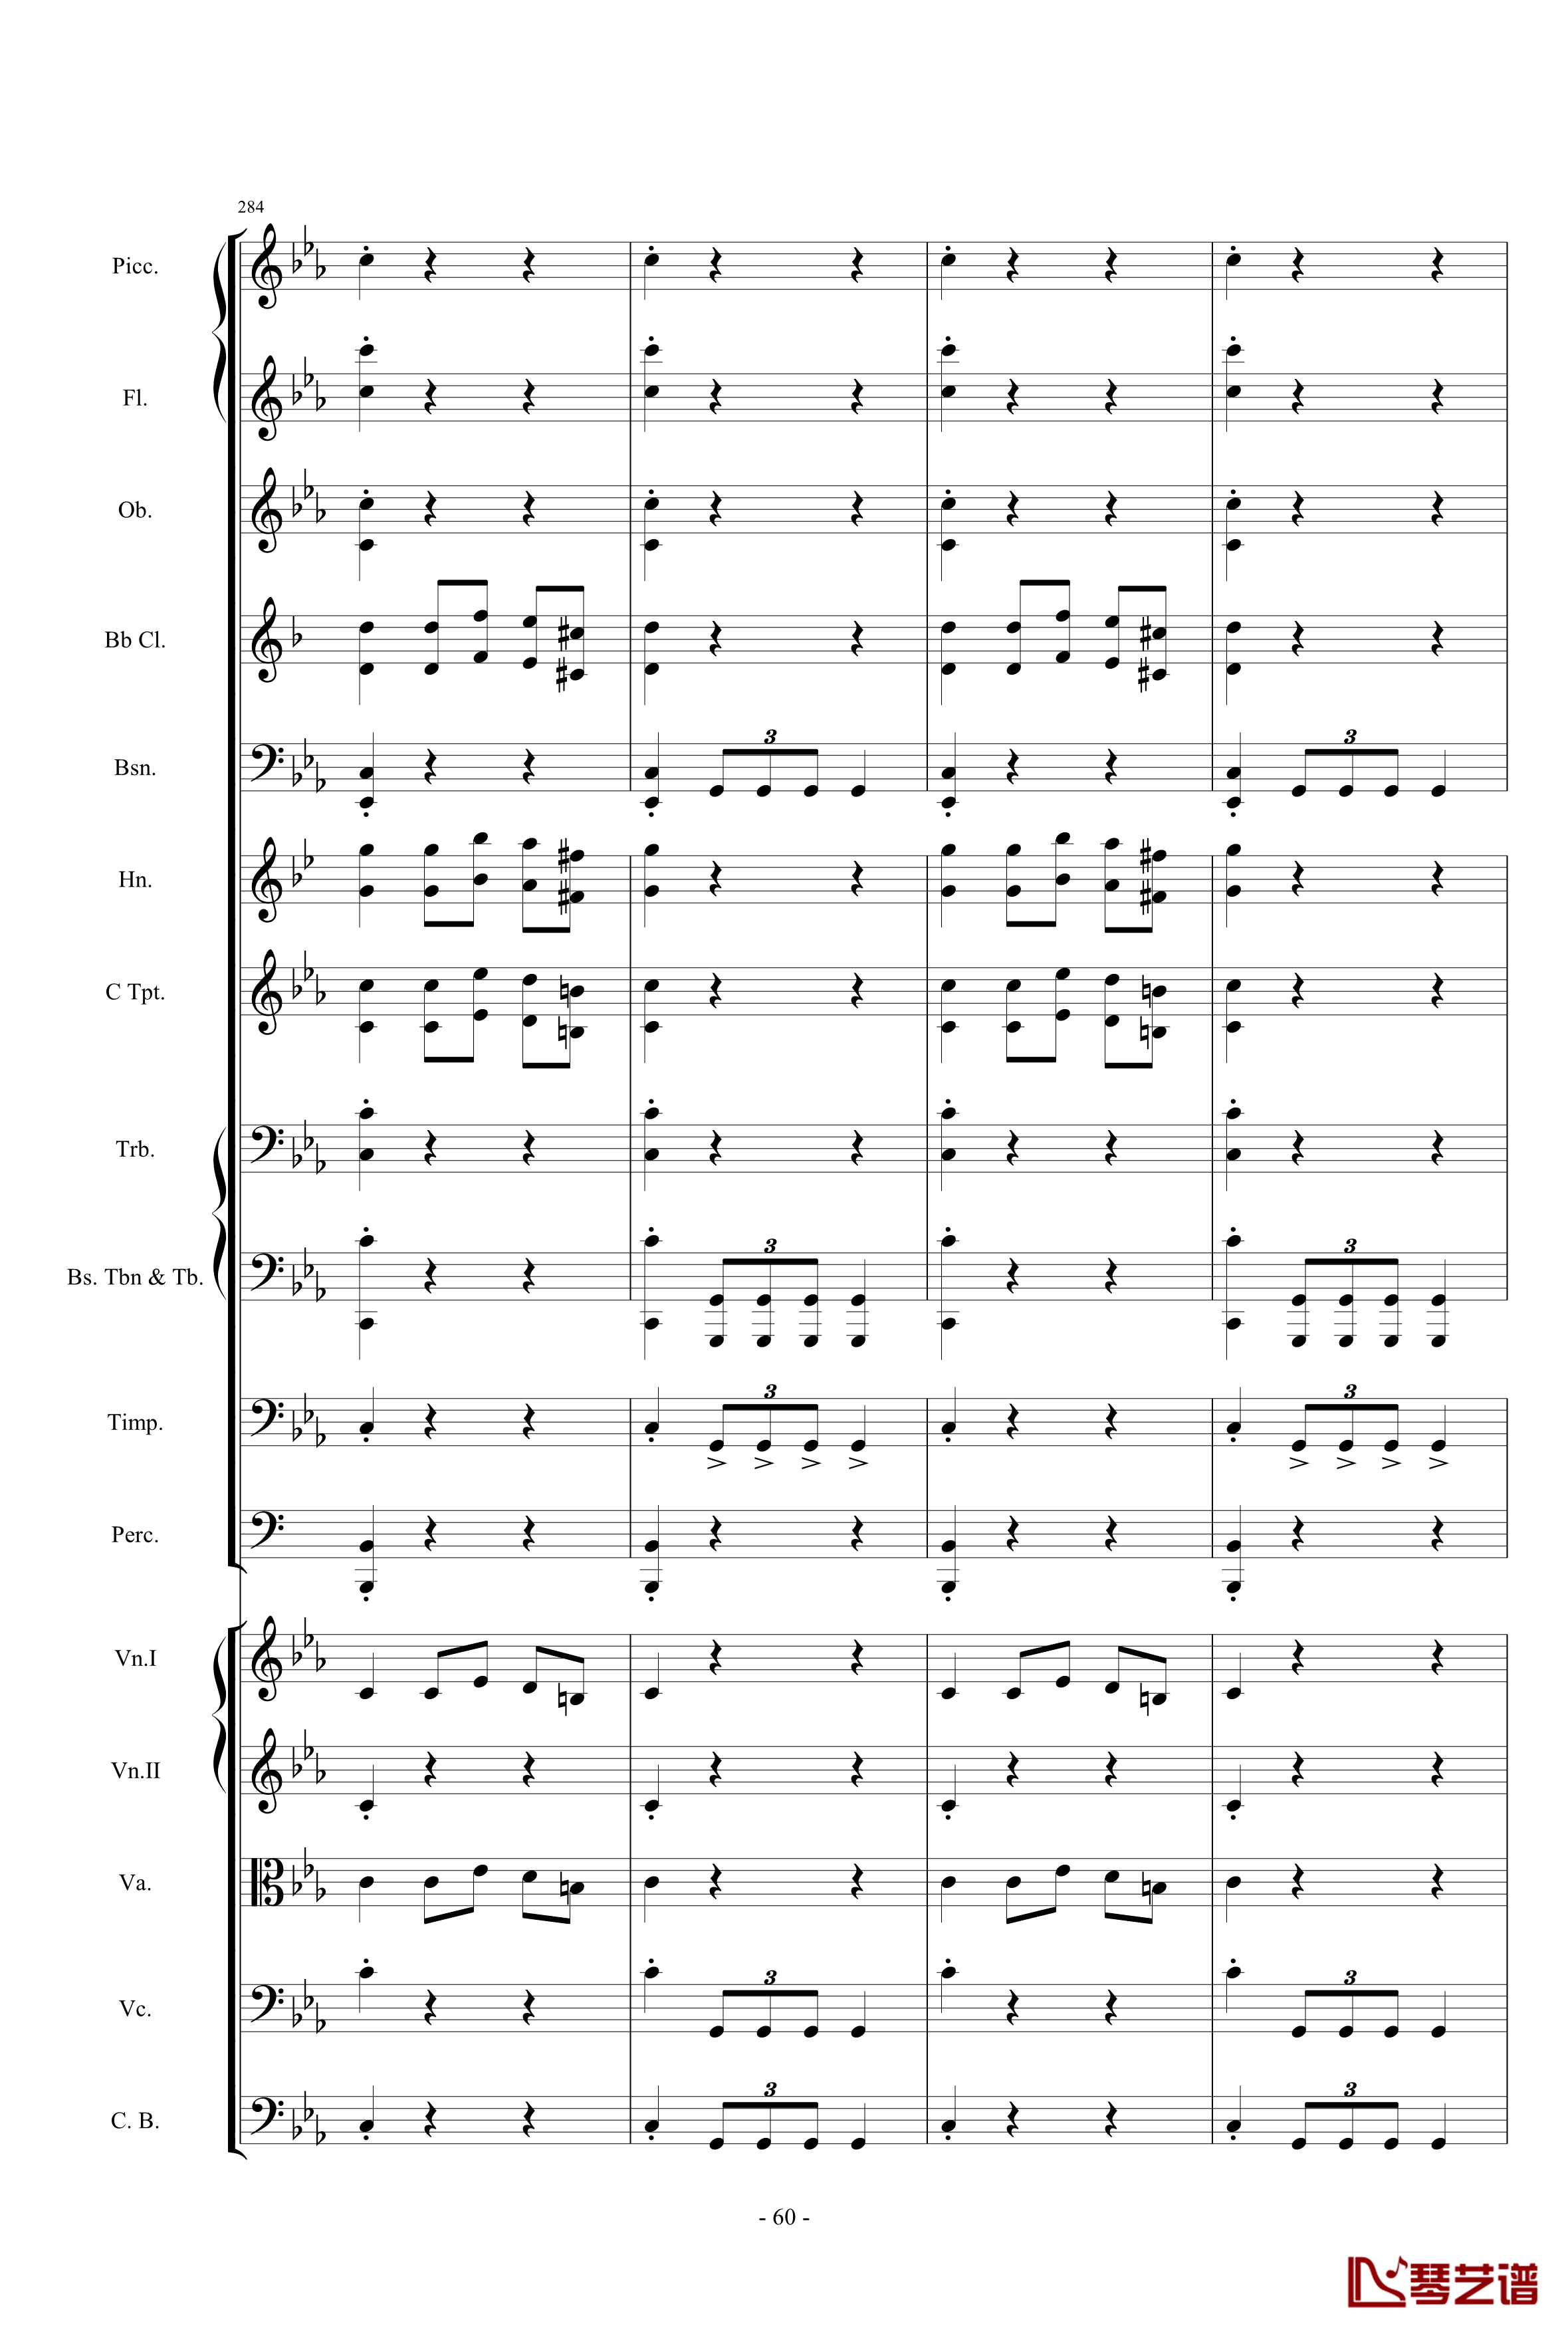 愤怒的小鸟交响曲第三乐章Op.5 no.3钢琴谱-1057257860